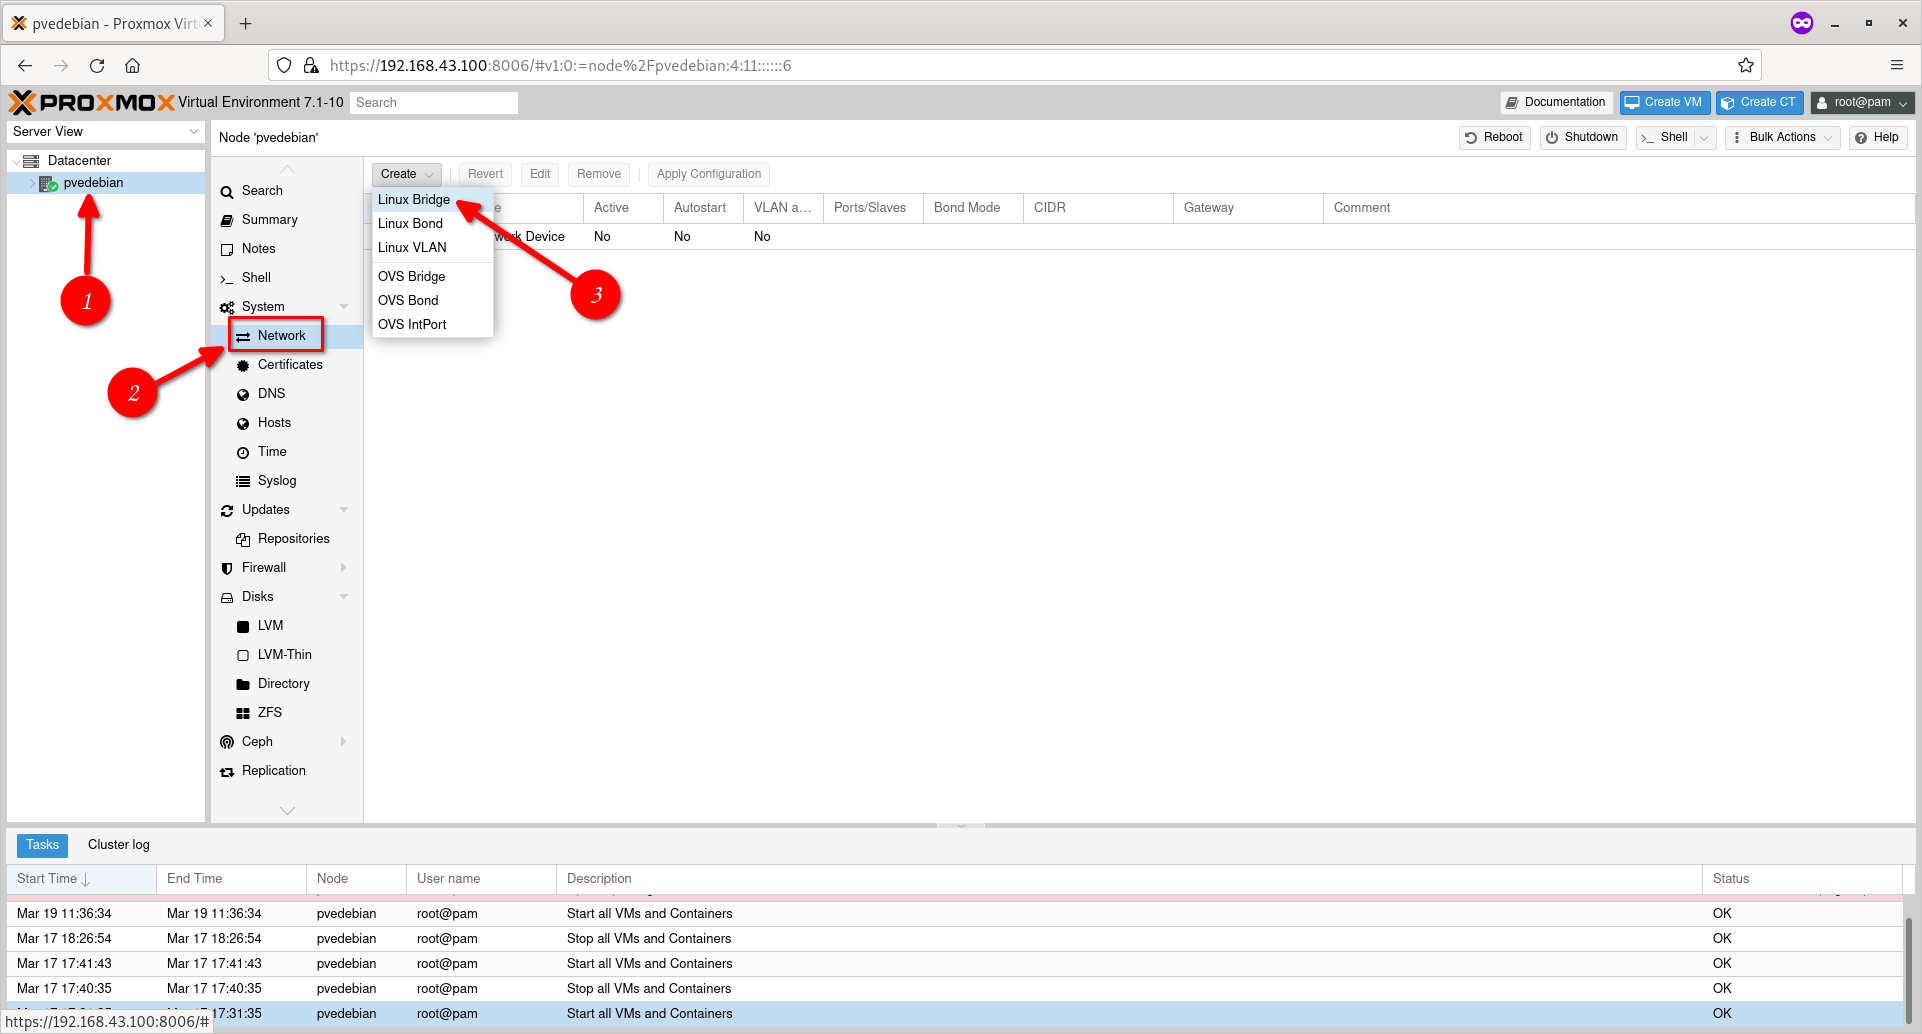 Proxmox 6.x Post Install Steps